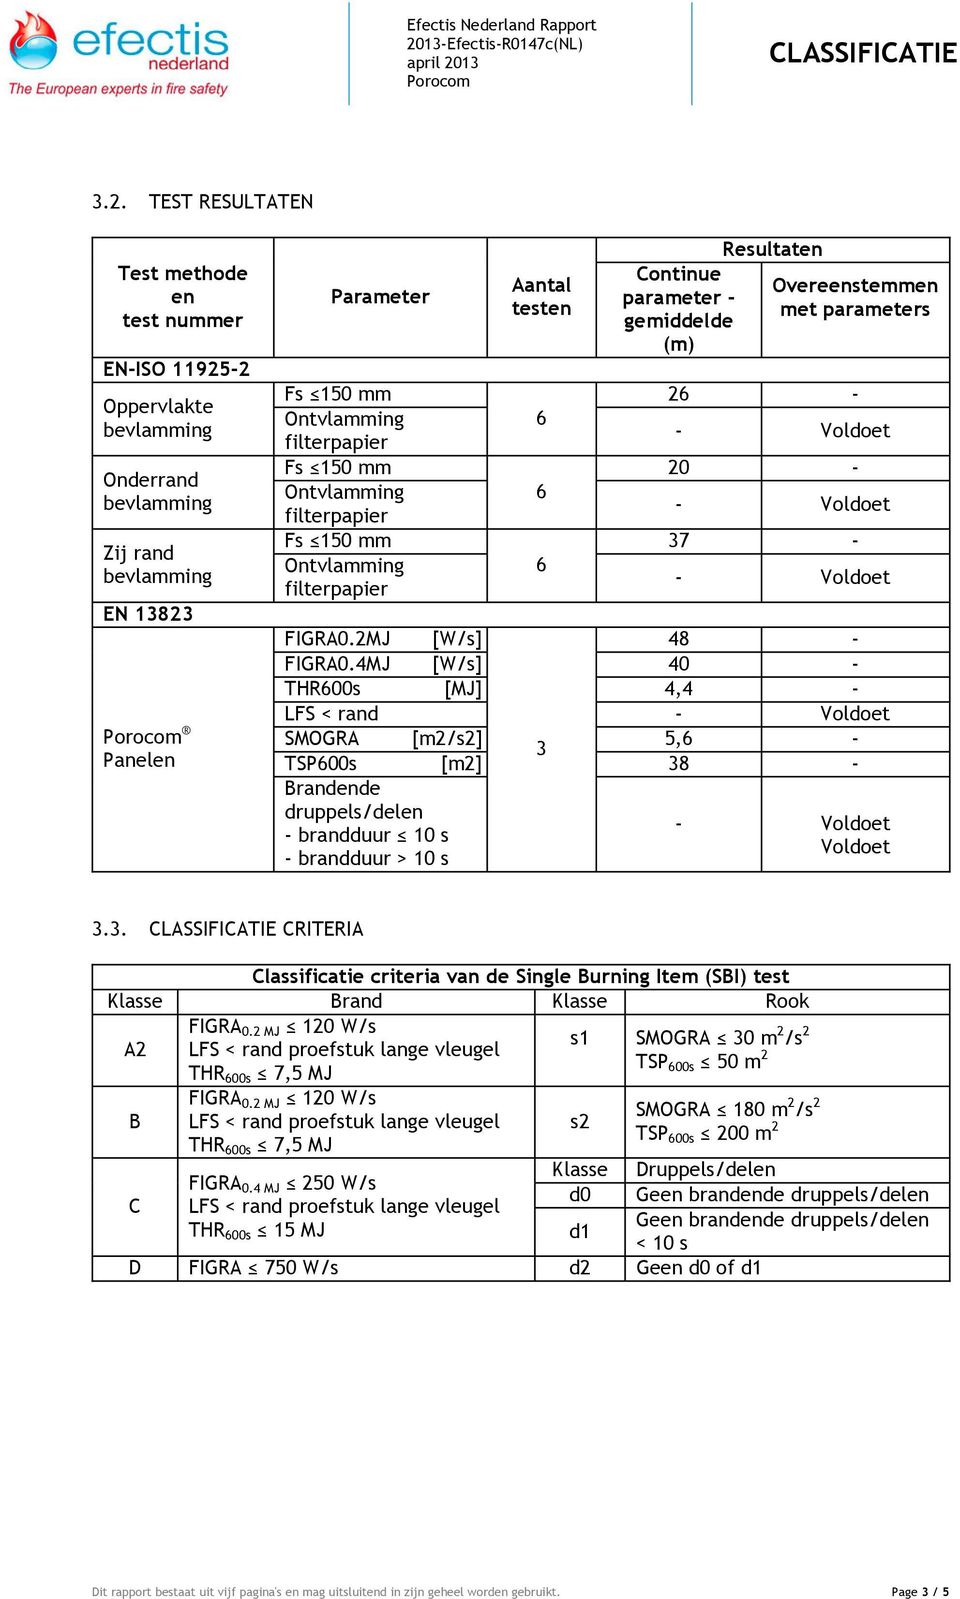 4MJ [W/s] 40 - THR00s [MJ] 4,4 - LFS < rand SMOGRA [m2/s2] 5, - 3 TSP00s [m2] 38 - Brandende druppels/delen - brandduur 10 s - brandduur > 10 s Voldoet 3.3. CRITERIA Classificatie criteria van de Single Burning Item (SBI) test Klasse Brand Klasse Rook FIGRA 0.